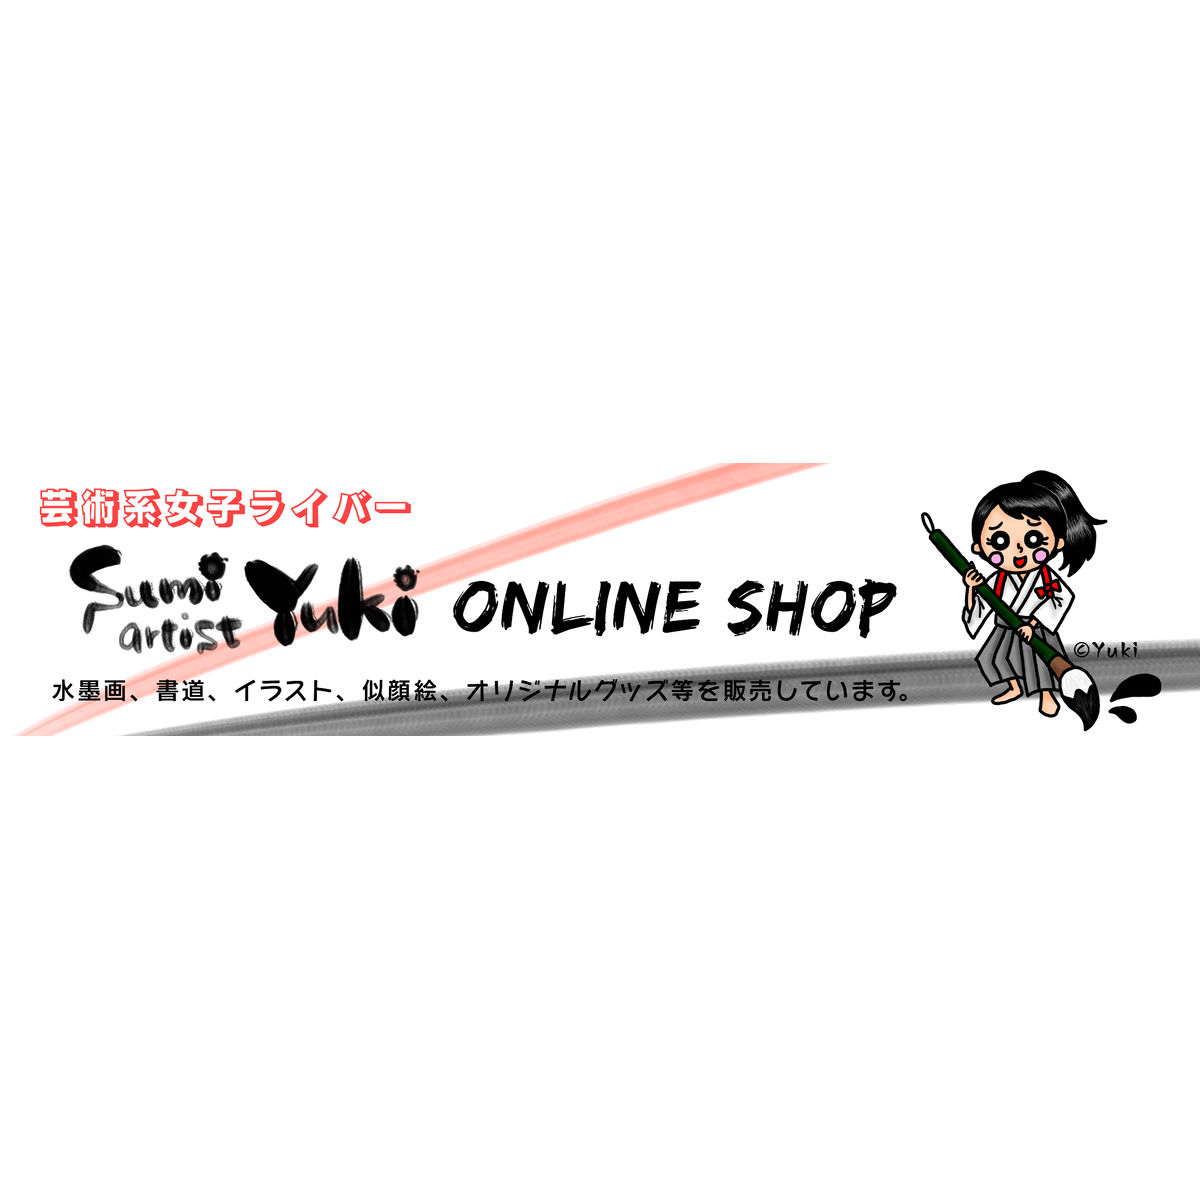 About Sumi Artist Yuki Online Shop